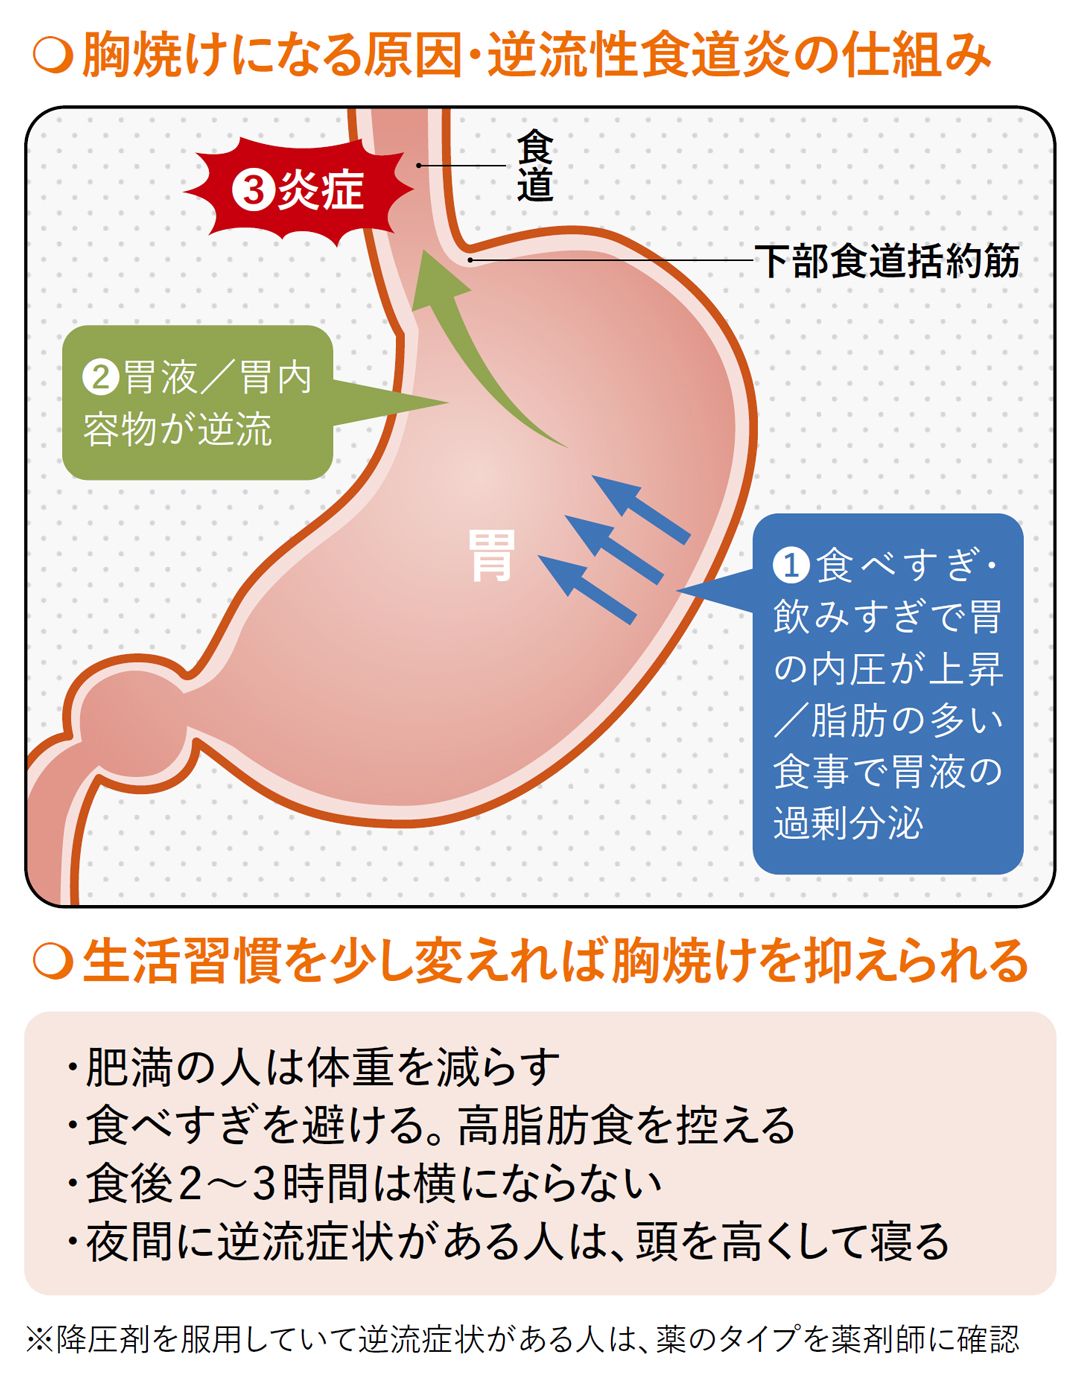 【図表】胸焼けになる原因・逆流性食道炎の仕組み